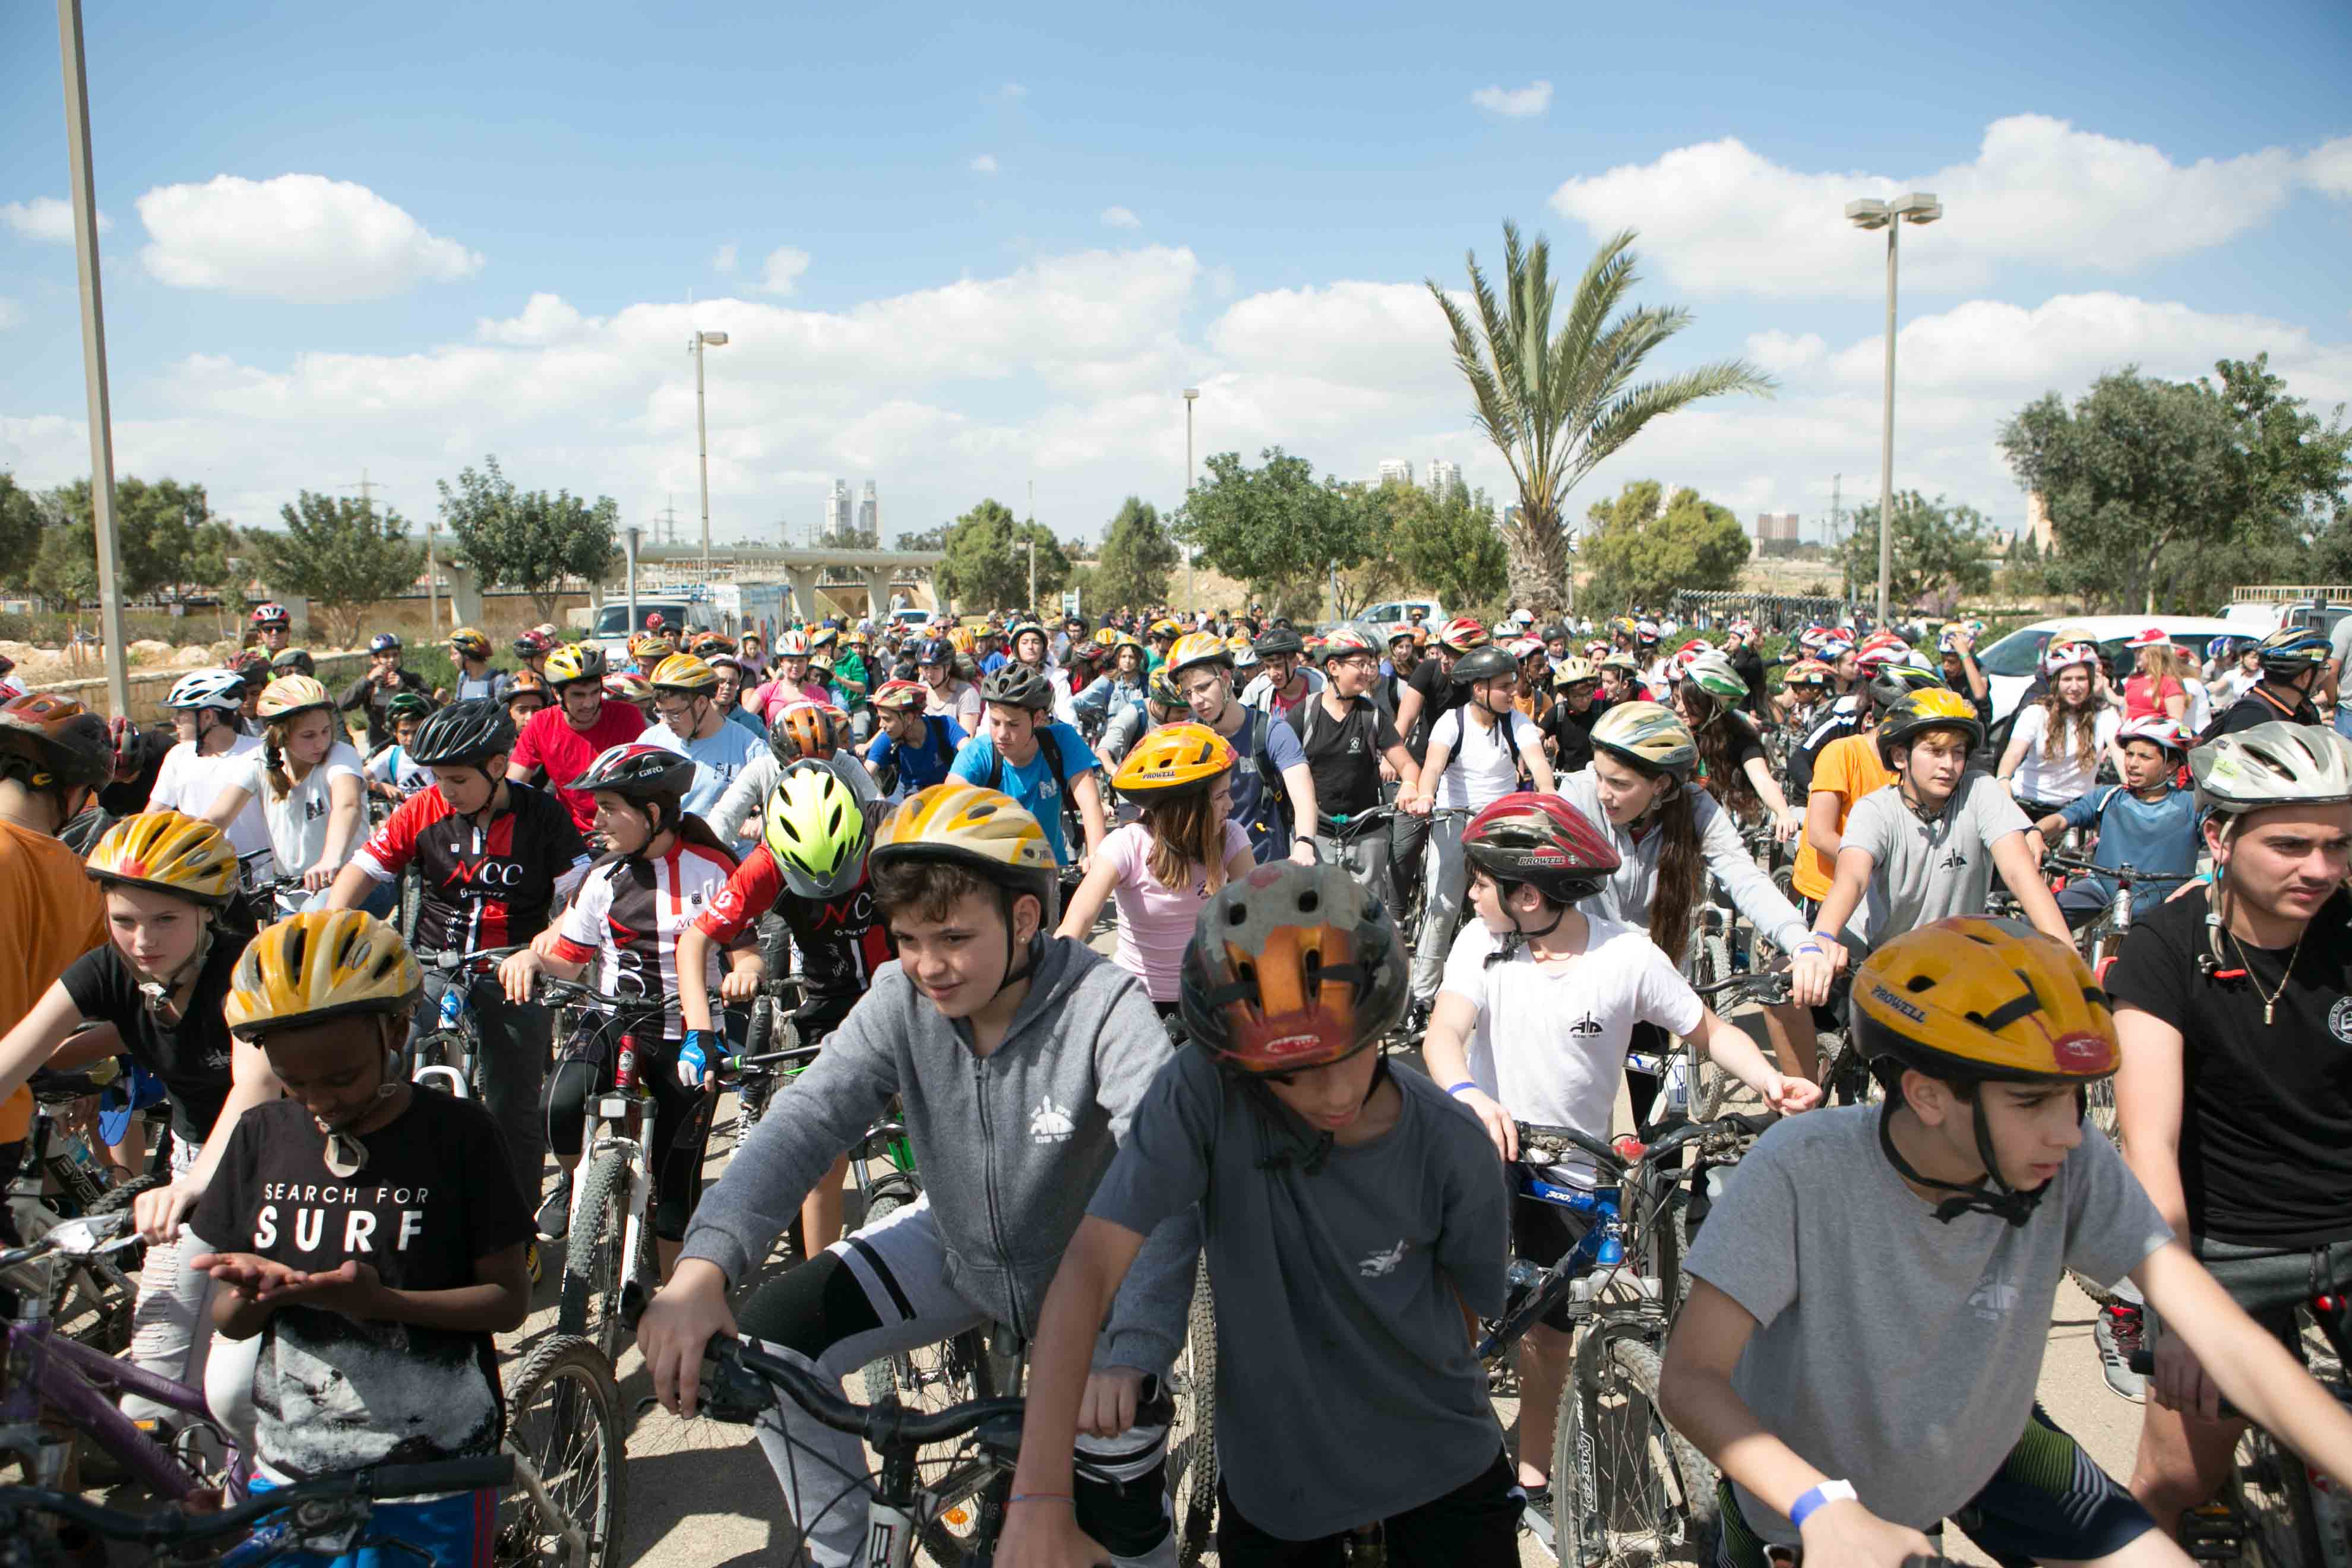 מדוושים בביטחה בנתיב הירוק בפארק נחל באר-שבע: מסע האופניים המסורתי לזכר יוסי צ'יפרוט התקיים בפעם העשירית